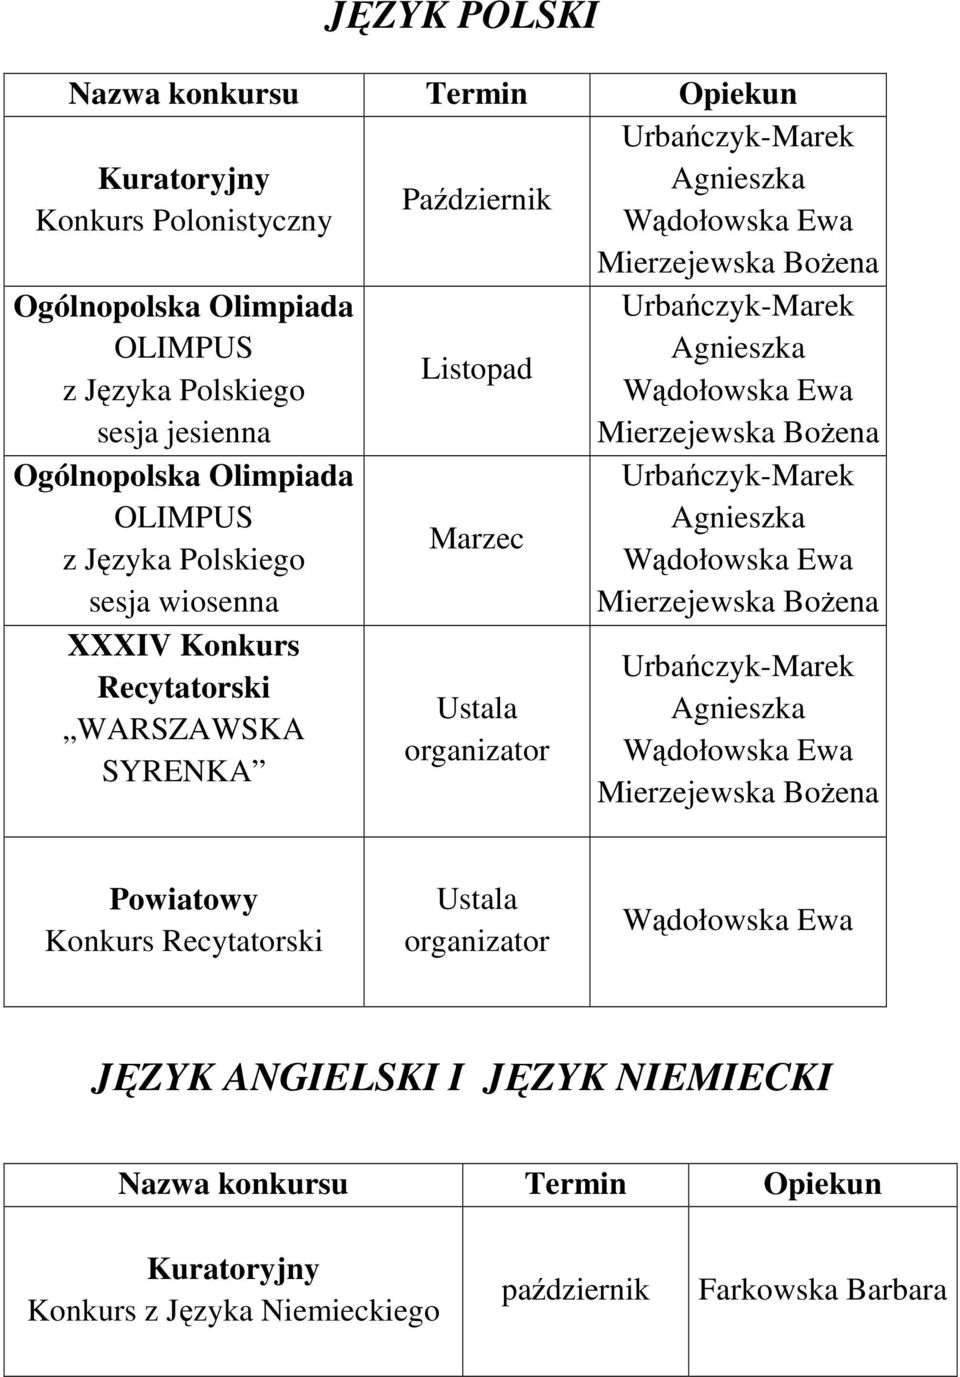 Mierzejewska BoŜena Urbańczyk-Marek Mierzejewska BoŜena Urbańczyk-Marek Mierzejewska BoŜena Powiatowy